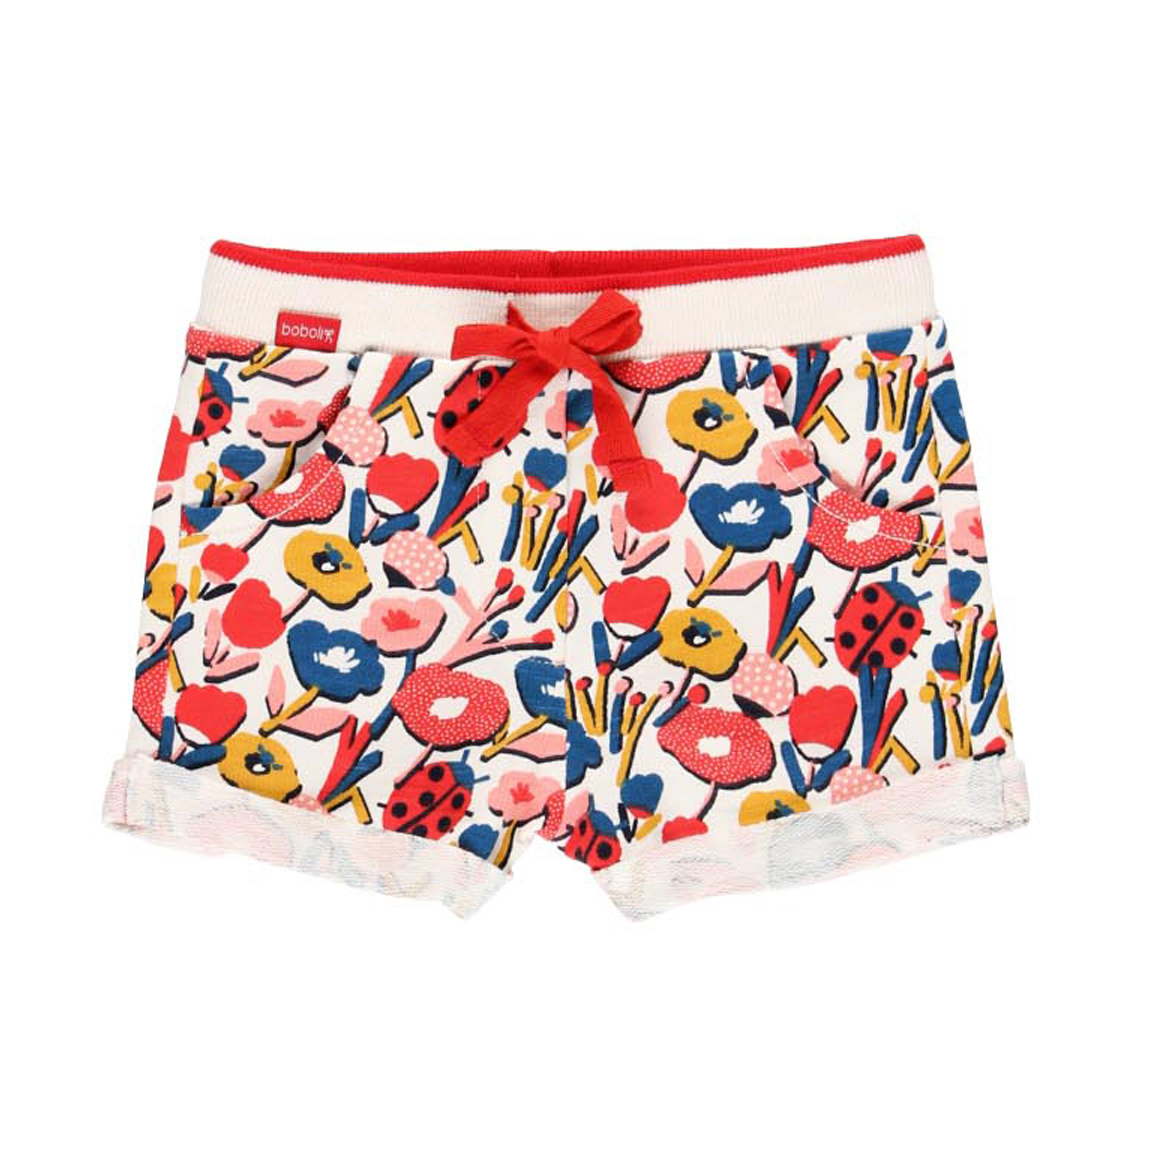 Ladybug floral shorts 1